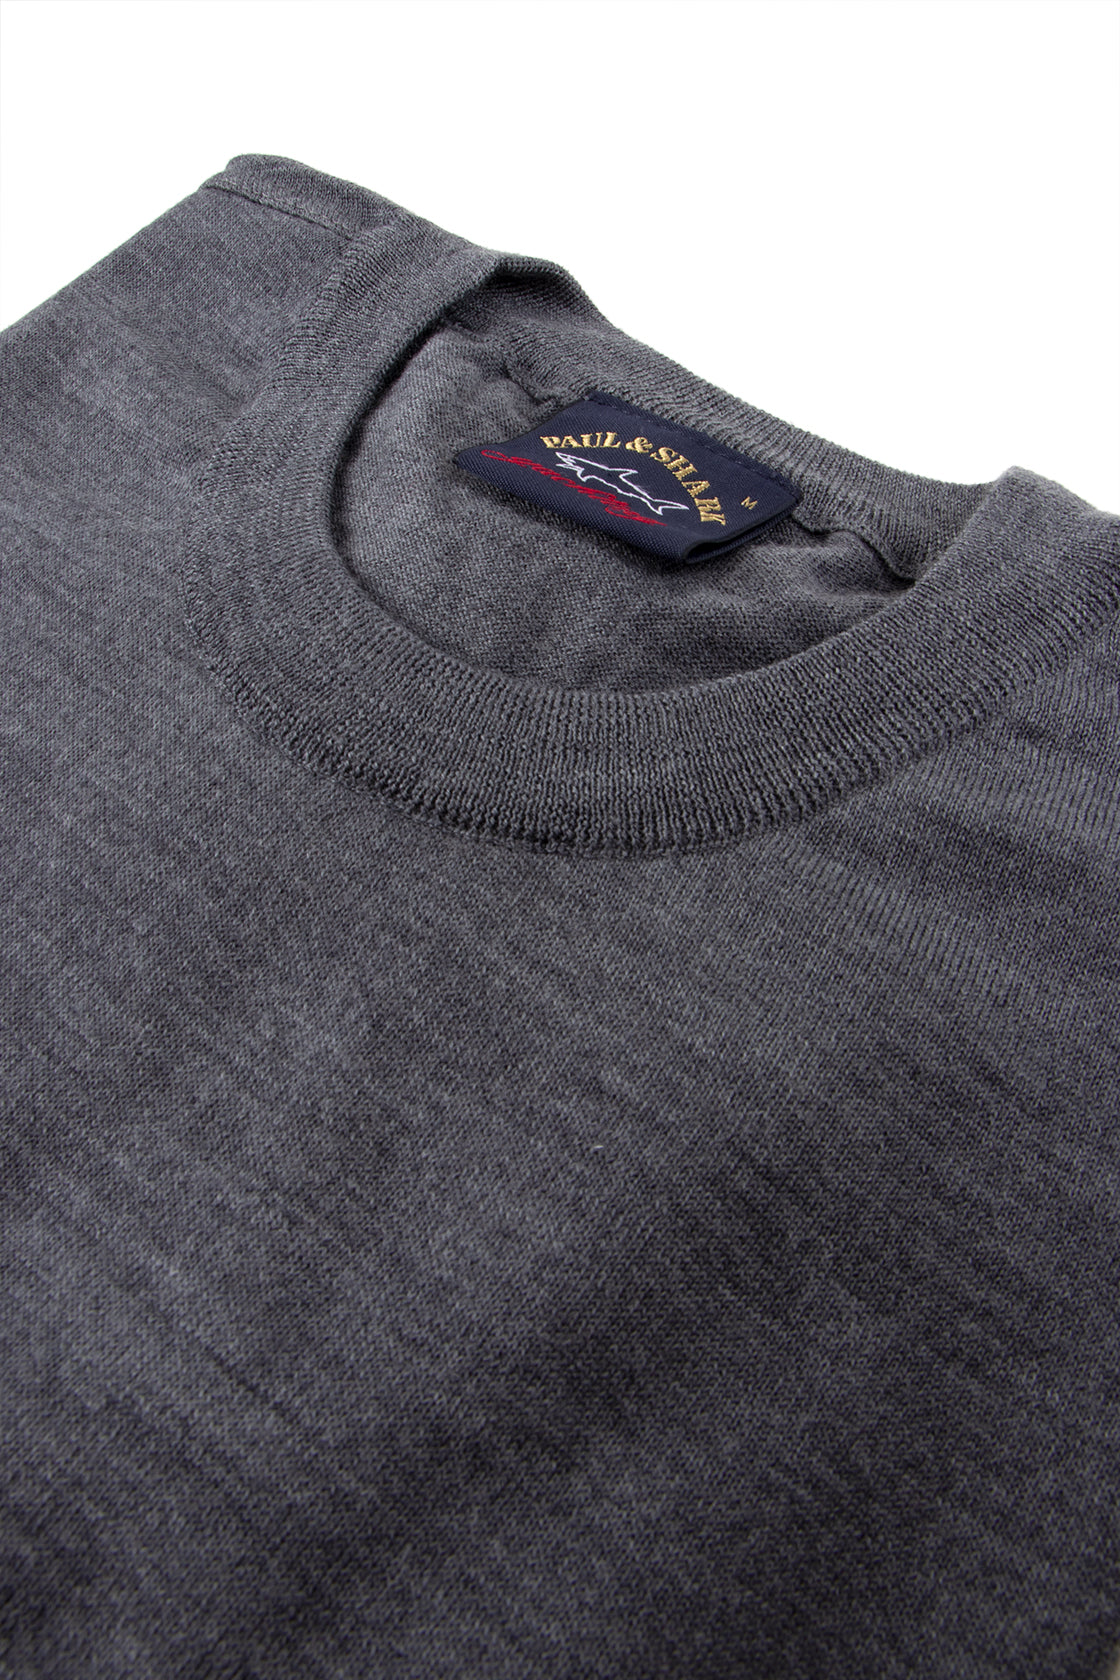 Paul & Shark Wool Sweater Grey